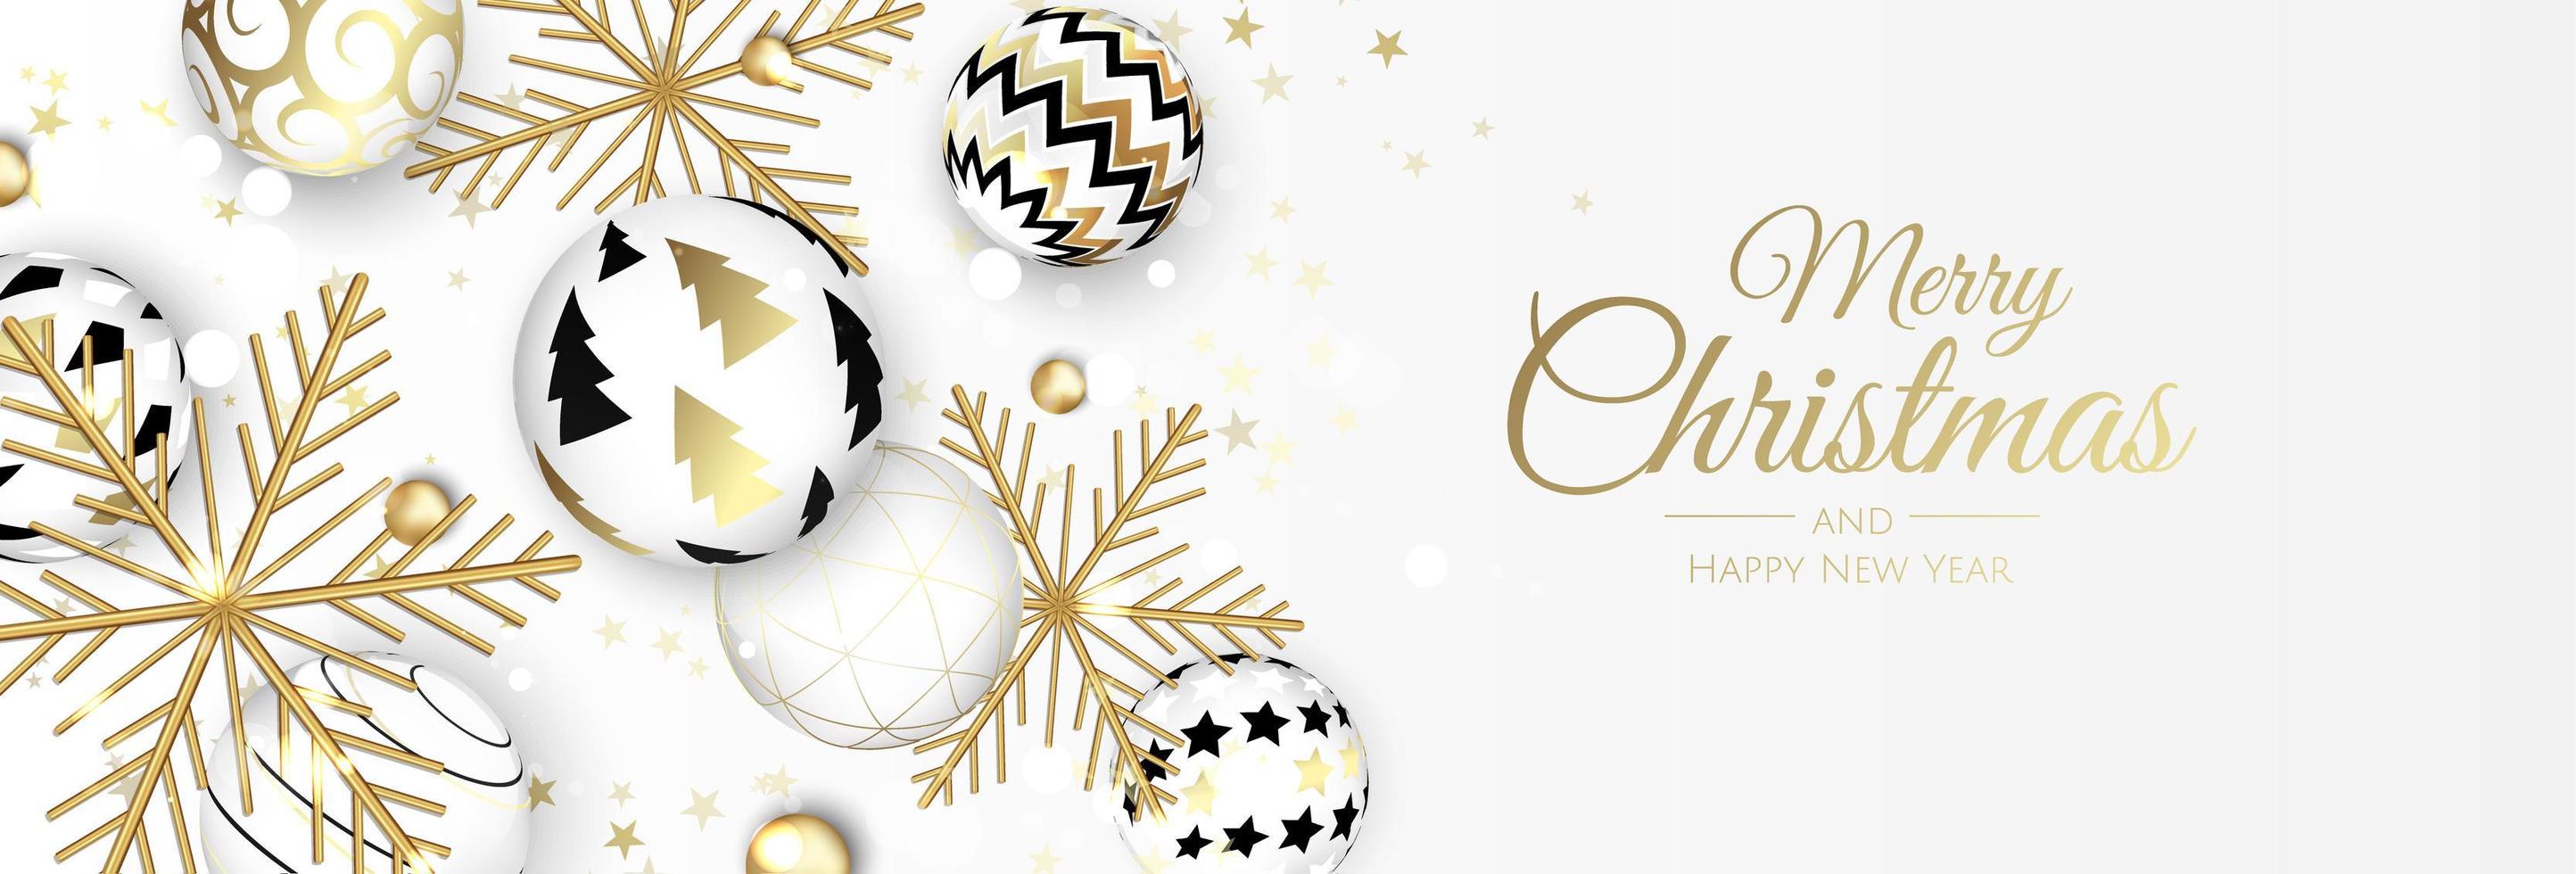 joyeux Noel et bonne année. fond festif de noël avec des objets 3d réalistes, des boules bleues et dorées. vecteur